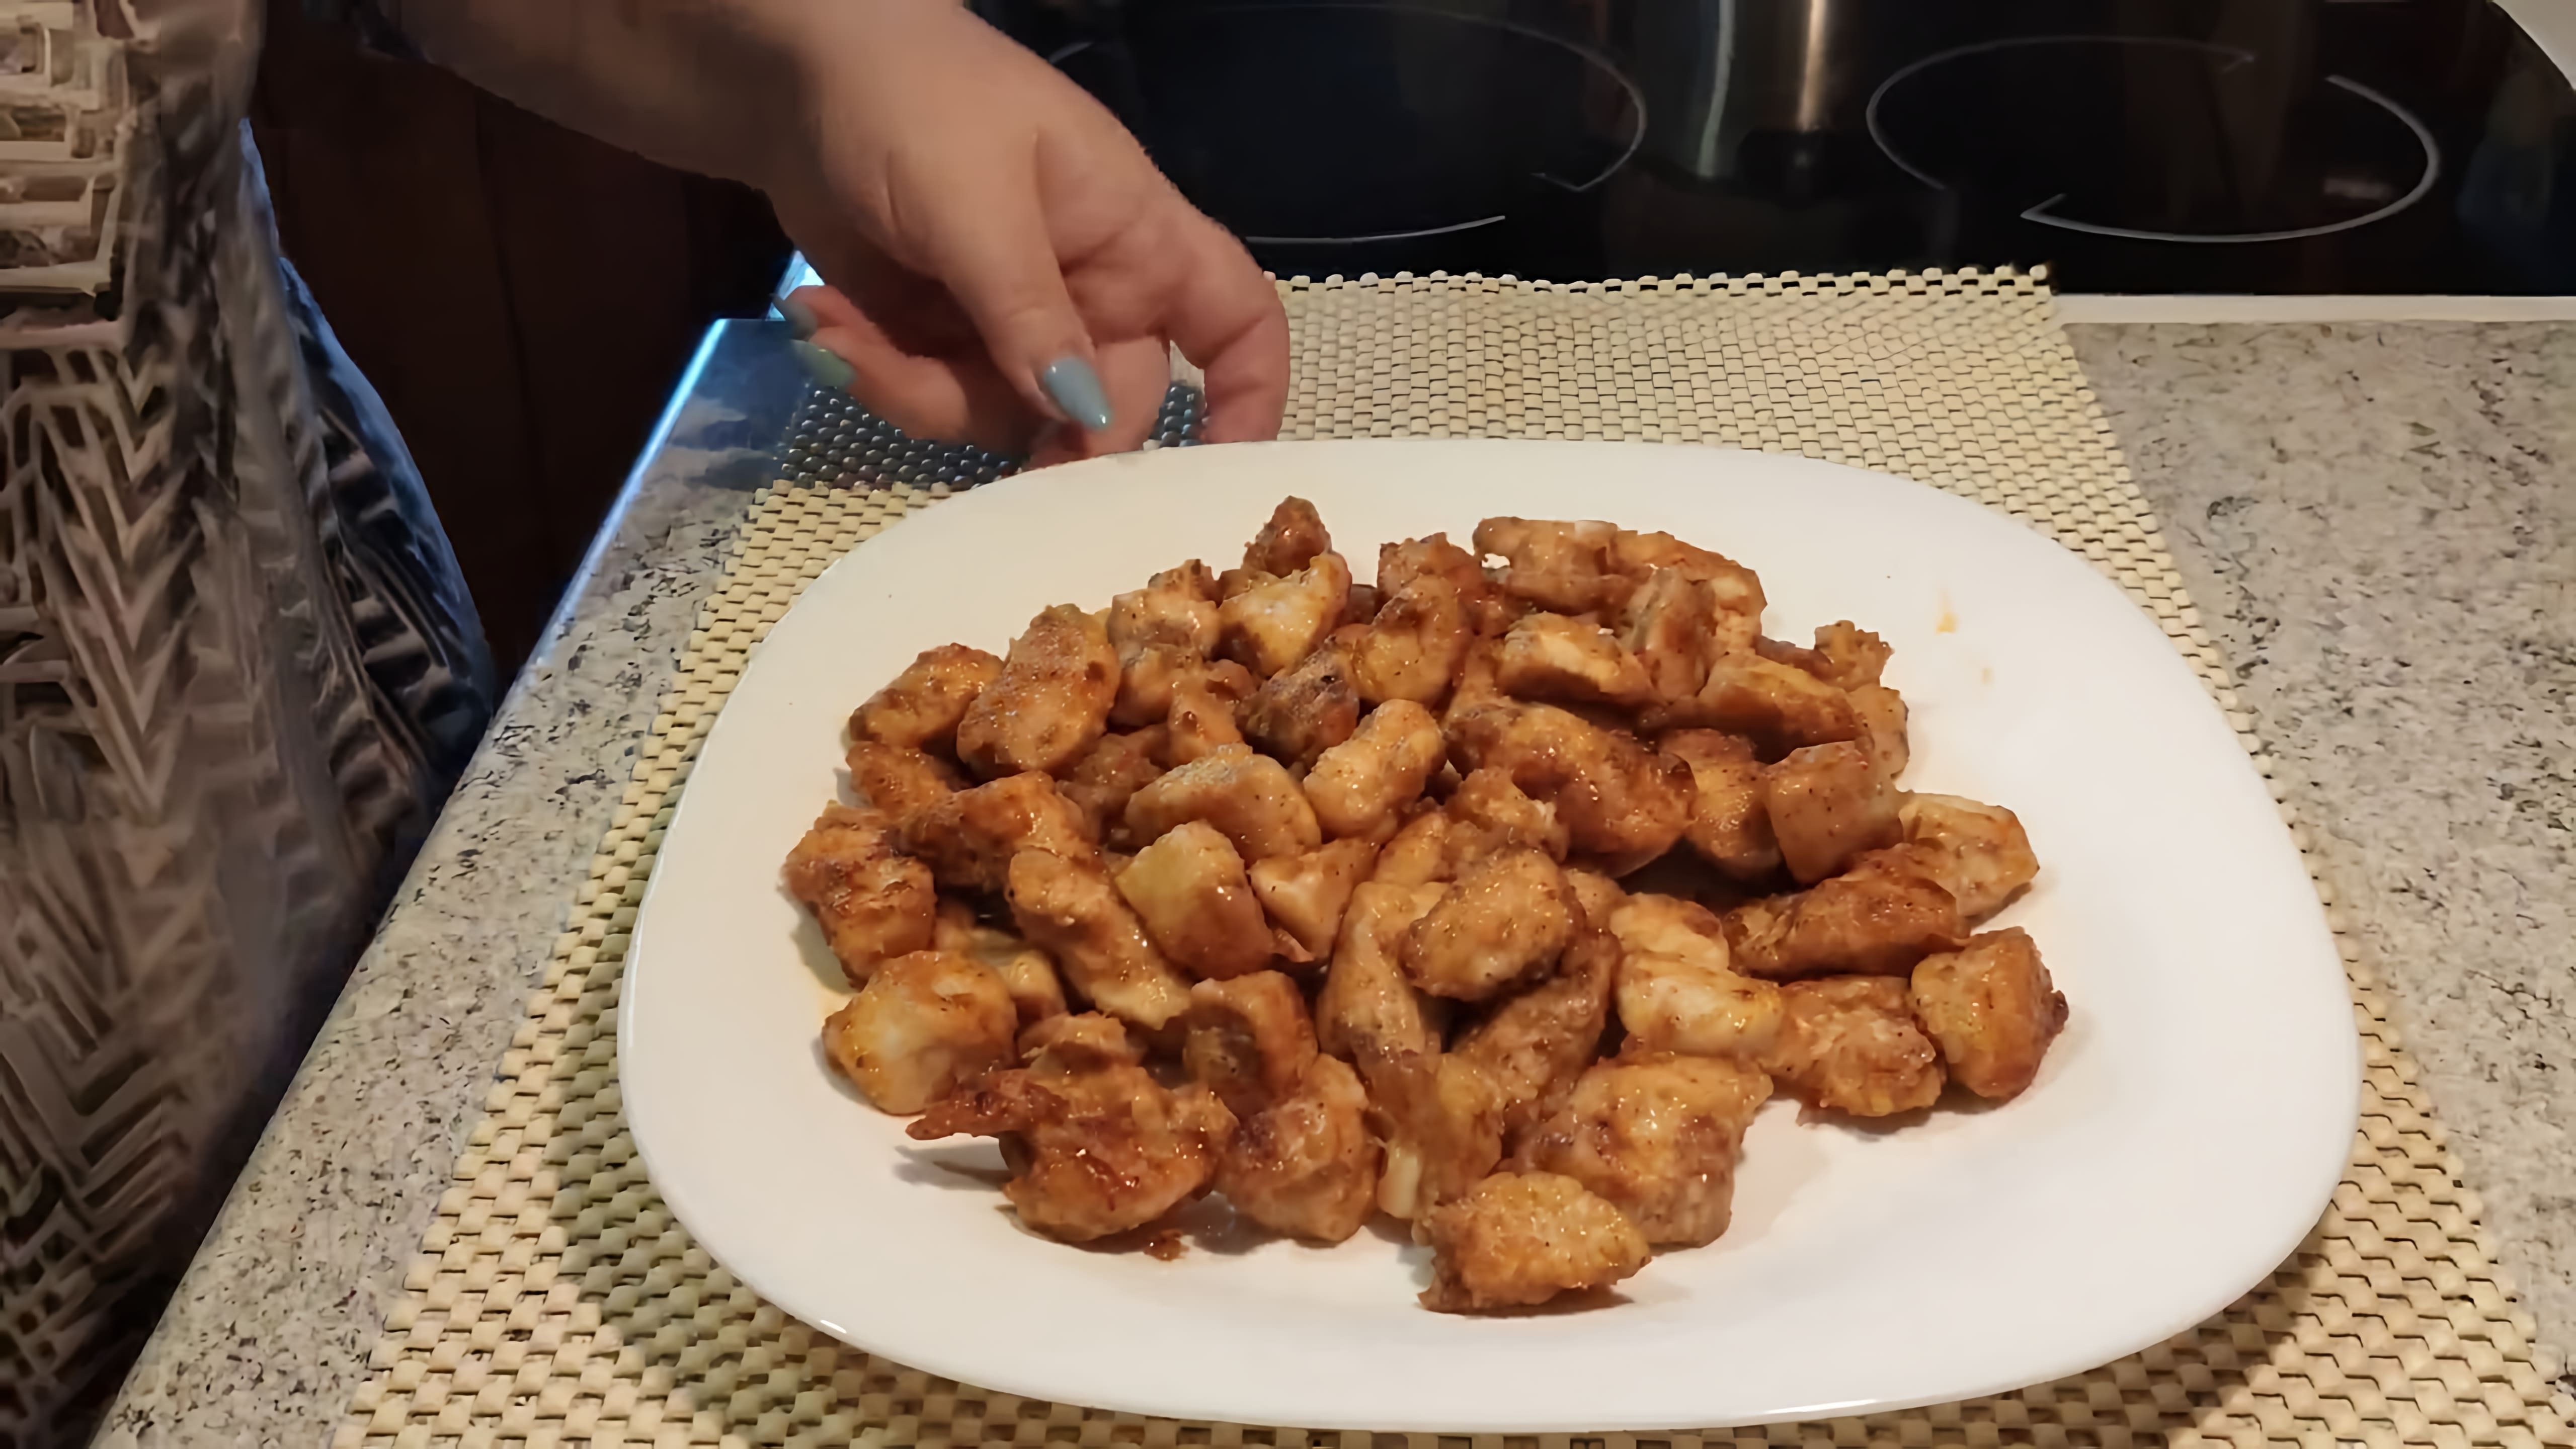 В этом видео демонстрируется процесс приготовления куриного филе в крахмале